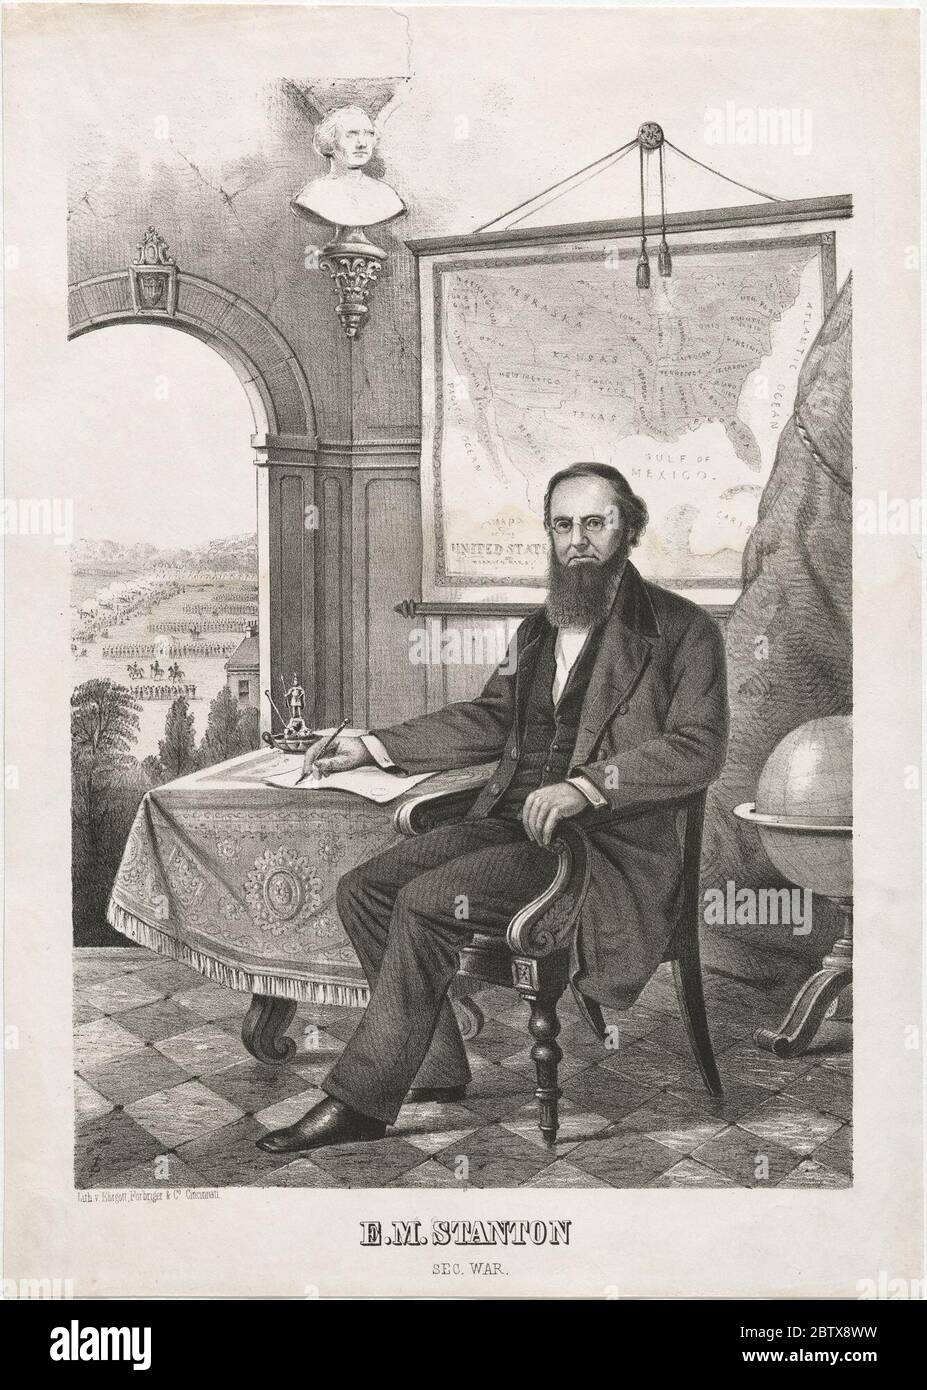 Edwin M. Stanton. Geboren Steubenville, OhioDieses Porträt von Edwin Stanton wurde von Ehrgott & Forbriger als Teil einer Druckgraphik-Serie veröffentlicht, die an politische Persönlichkeiten der Vereinigten Staaten auf dem Höhepunkt des Bürgerkriegs erinnert. Stockfoto